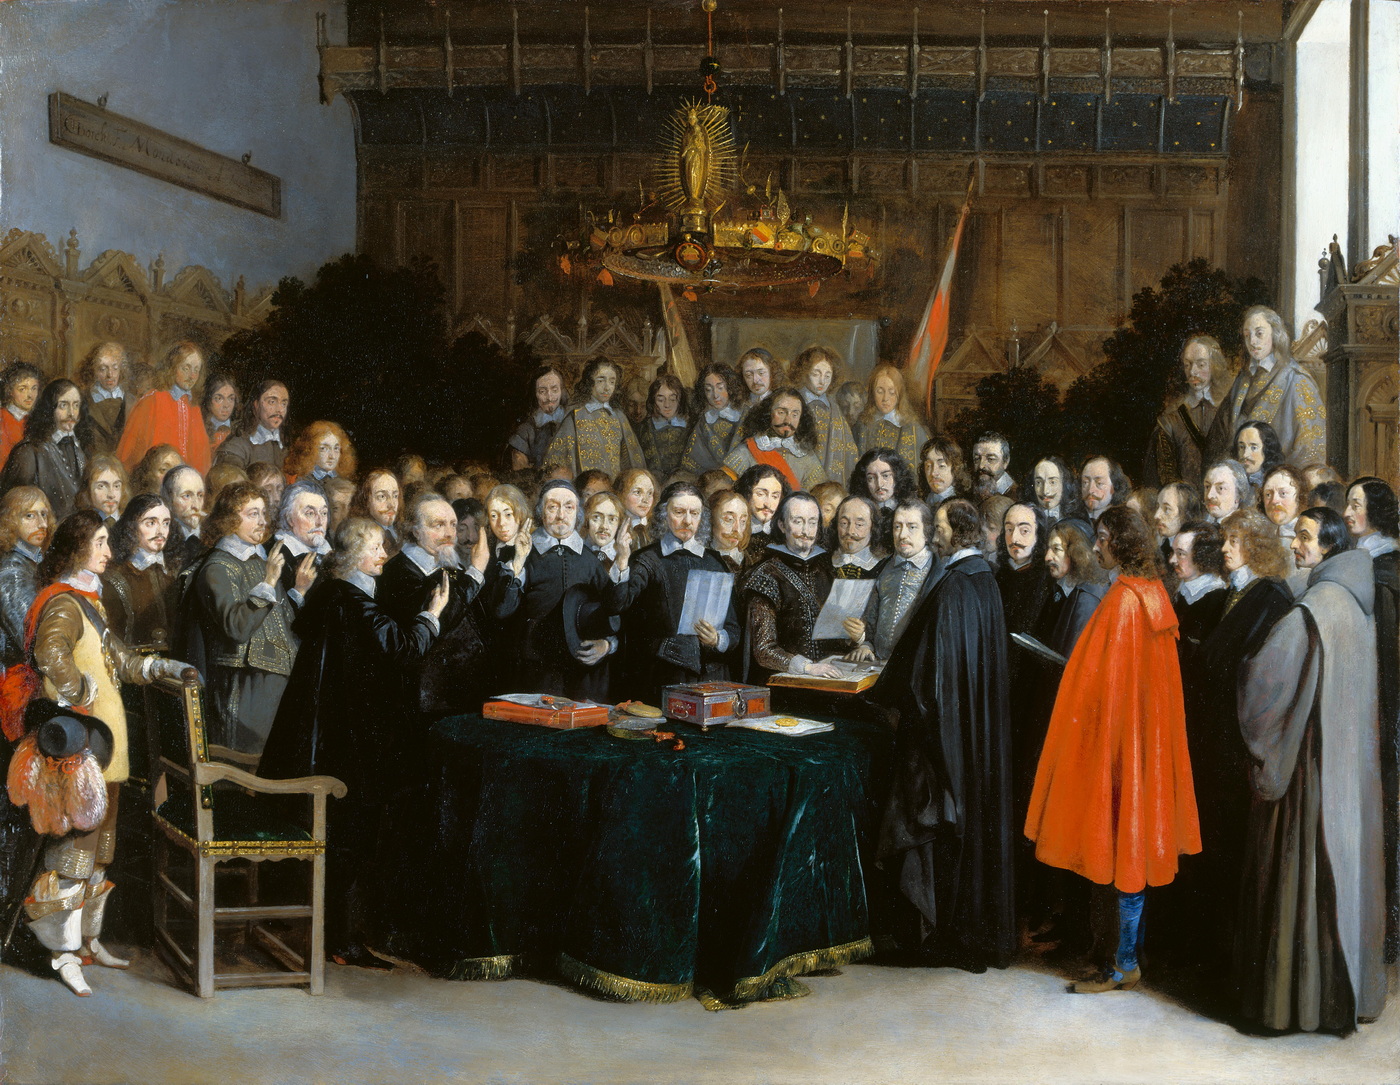 De beëdiging van het verdrag door de Spaanse en Nederlandse onderhandelaars (Gerard Terborch, 1648). Dit schilderij herdenkt de ratificatie op 15 mei 1648 van het Spaans-Nederlandse vredesverdrag dat eerder dat jaar werd ondertekend, ook in Münster. Het gaat niet om het beroemdere Verdrag van Münster dat Frankrijk, de Keizer van het Heilige Roomse Rijk en hun respectievelijke bondgenoten op 24 oktober 1648 ondertekenden en waarvoor geen schilderijen bestaan. 
De ondertekening van het vredesverdrag van Münster - de zes onderhandelaars met opgeheven vingers v.l.n.r. Willem Ripperda, Frans van Donia, Adriaen Clant tot Stedum, Adriaen Pauw, Johan van Mathenesse en Barthold van Gent.